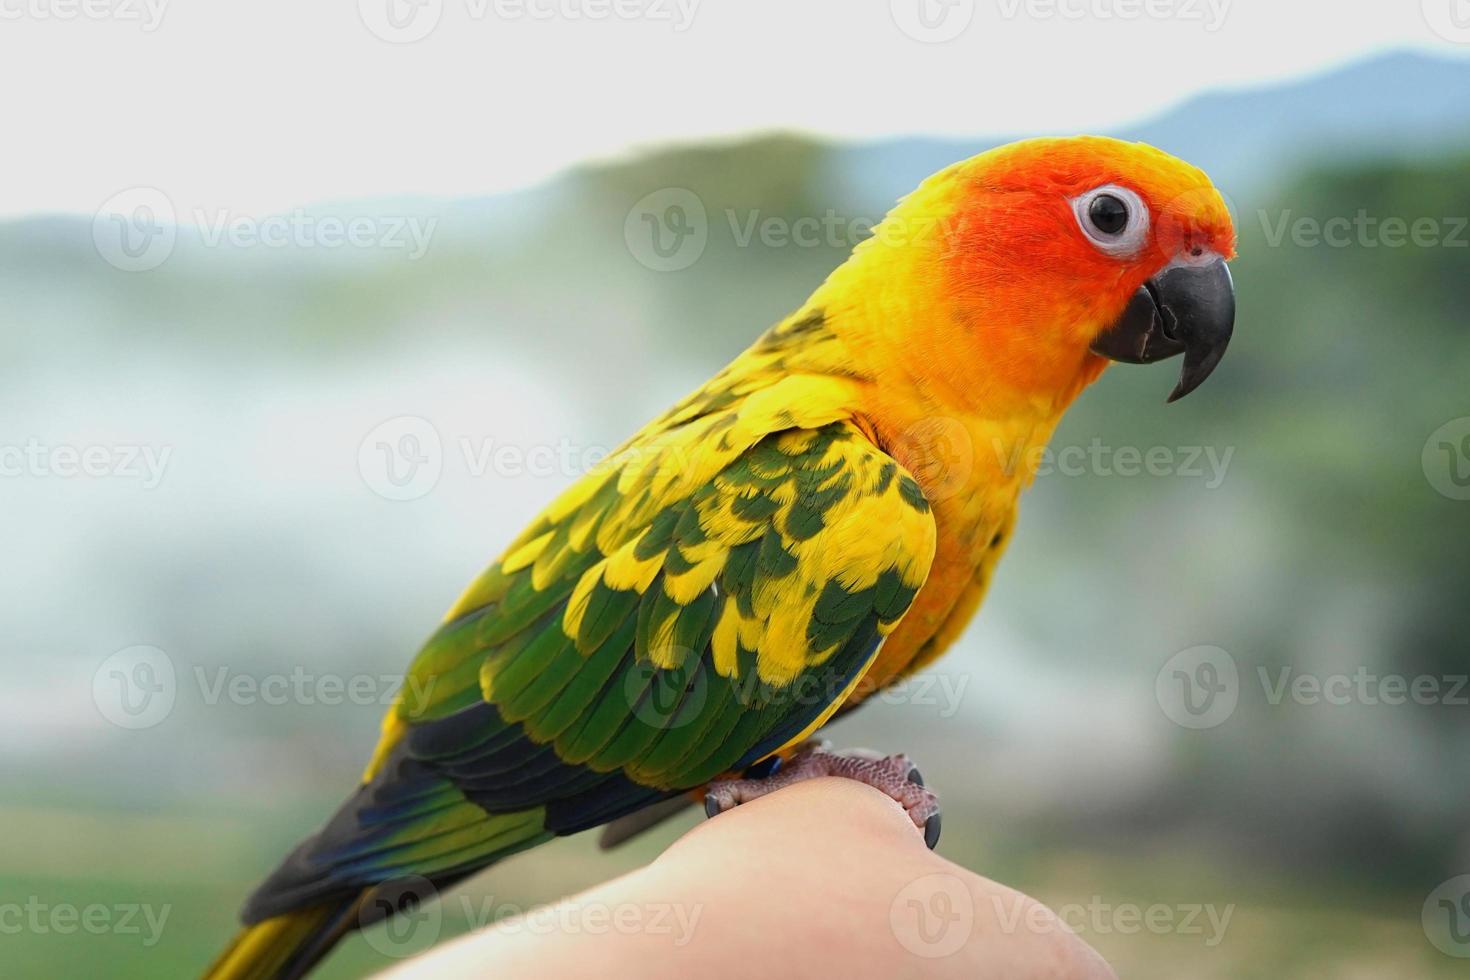 sonnensittich papagei oder vogel schön ist aratinga hat gelbe auf der hand hintergrund verschwimmen berge und himmel, aratinga solstitialis exotisches haustier liebenswert, gebürtig aus amazon foto